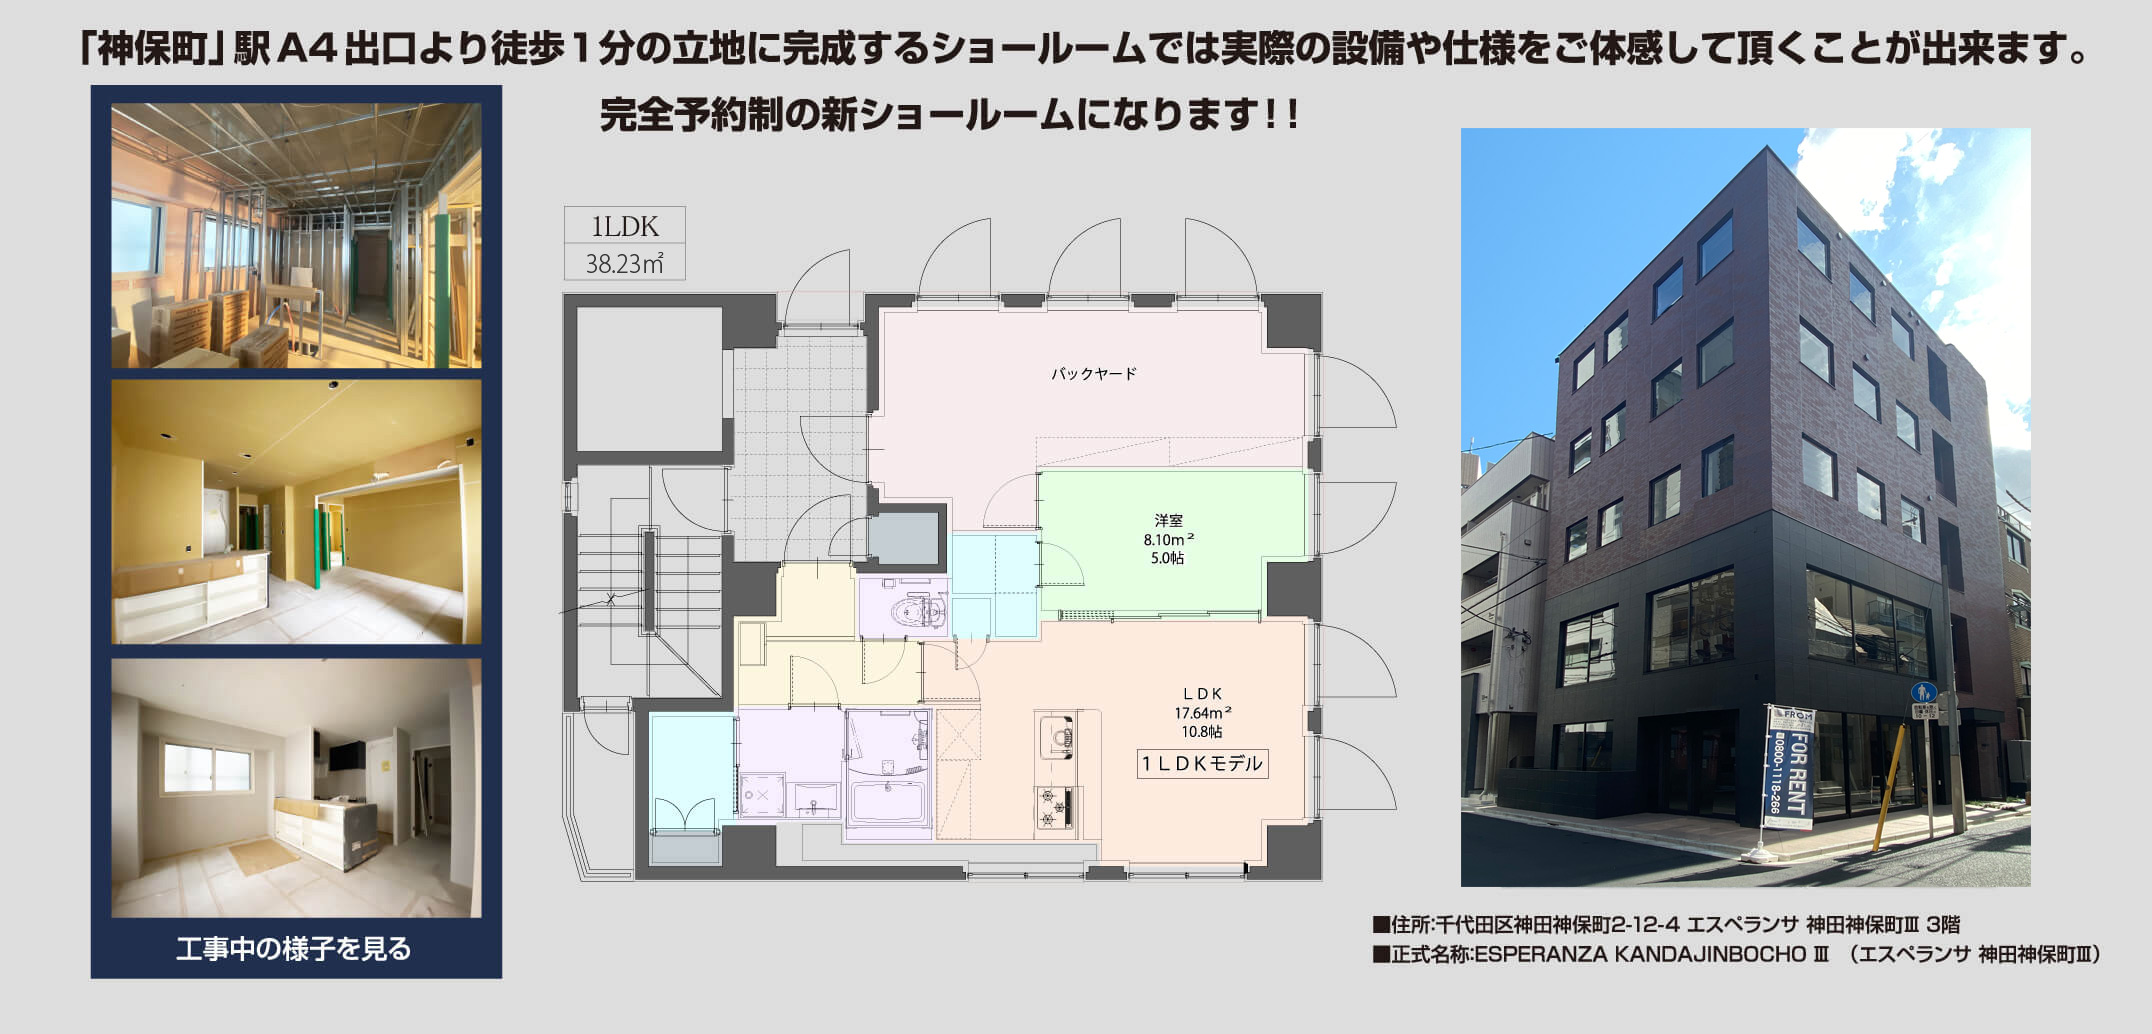 2020年9月に神田神保町にショールームをオープン致します!